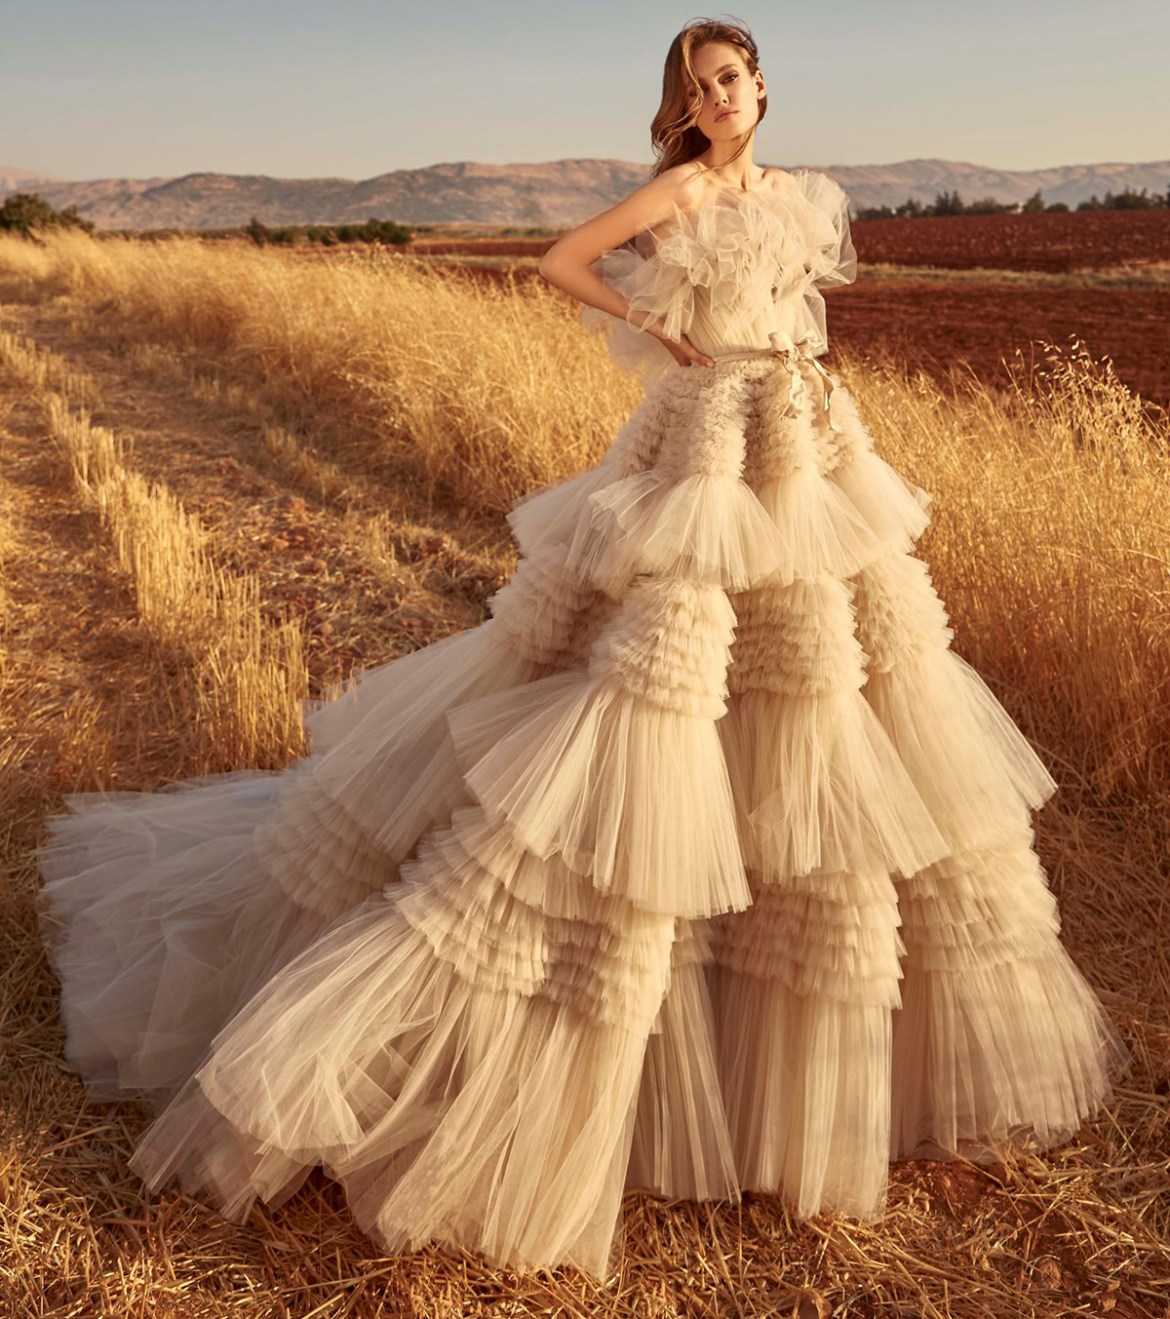 Модное свадебное платье для зимы 2020 года: мега тренды фото - модный журнал